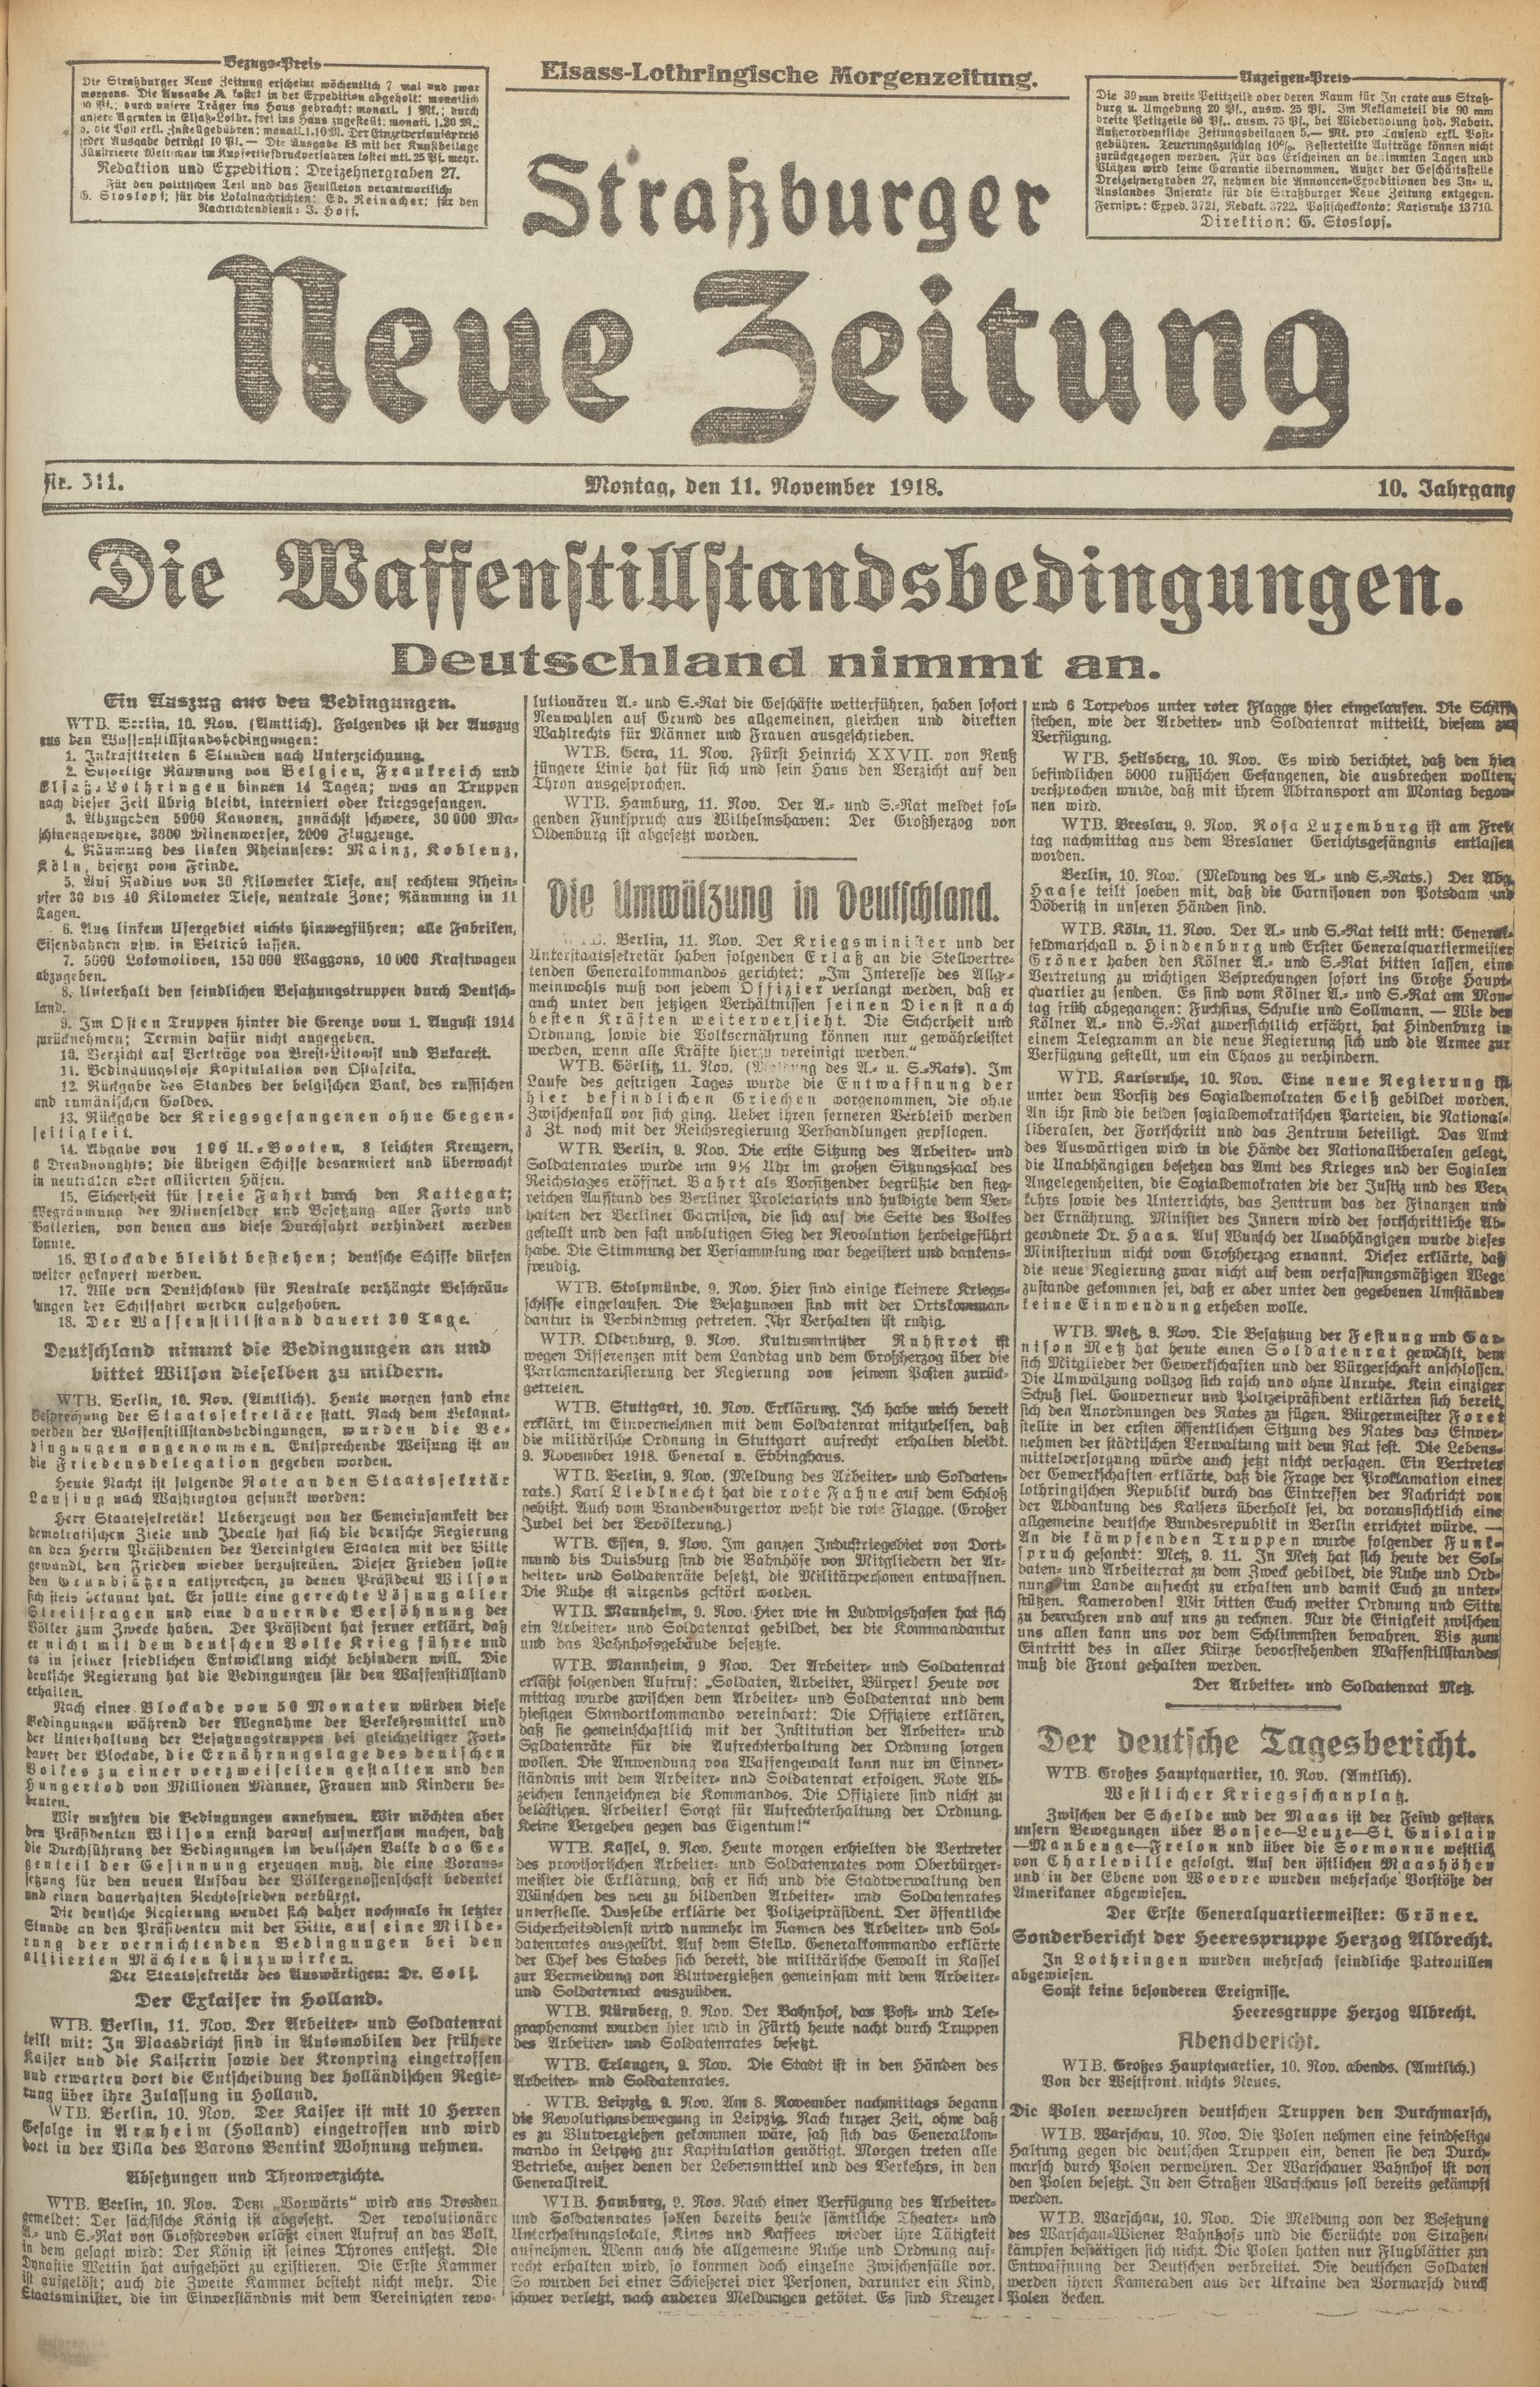 Strassburger Neue Zeitung - 11 nov 1918